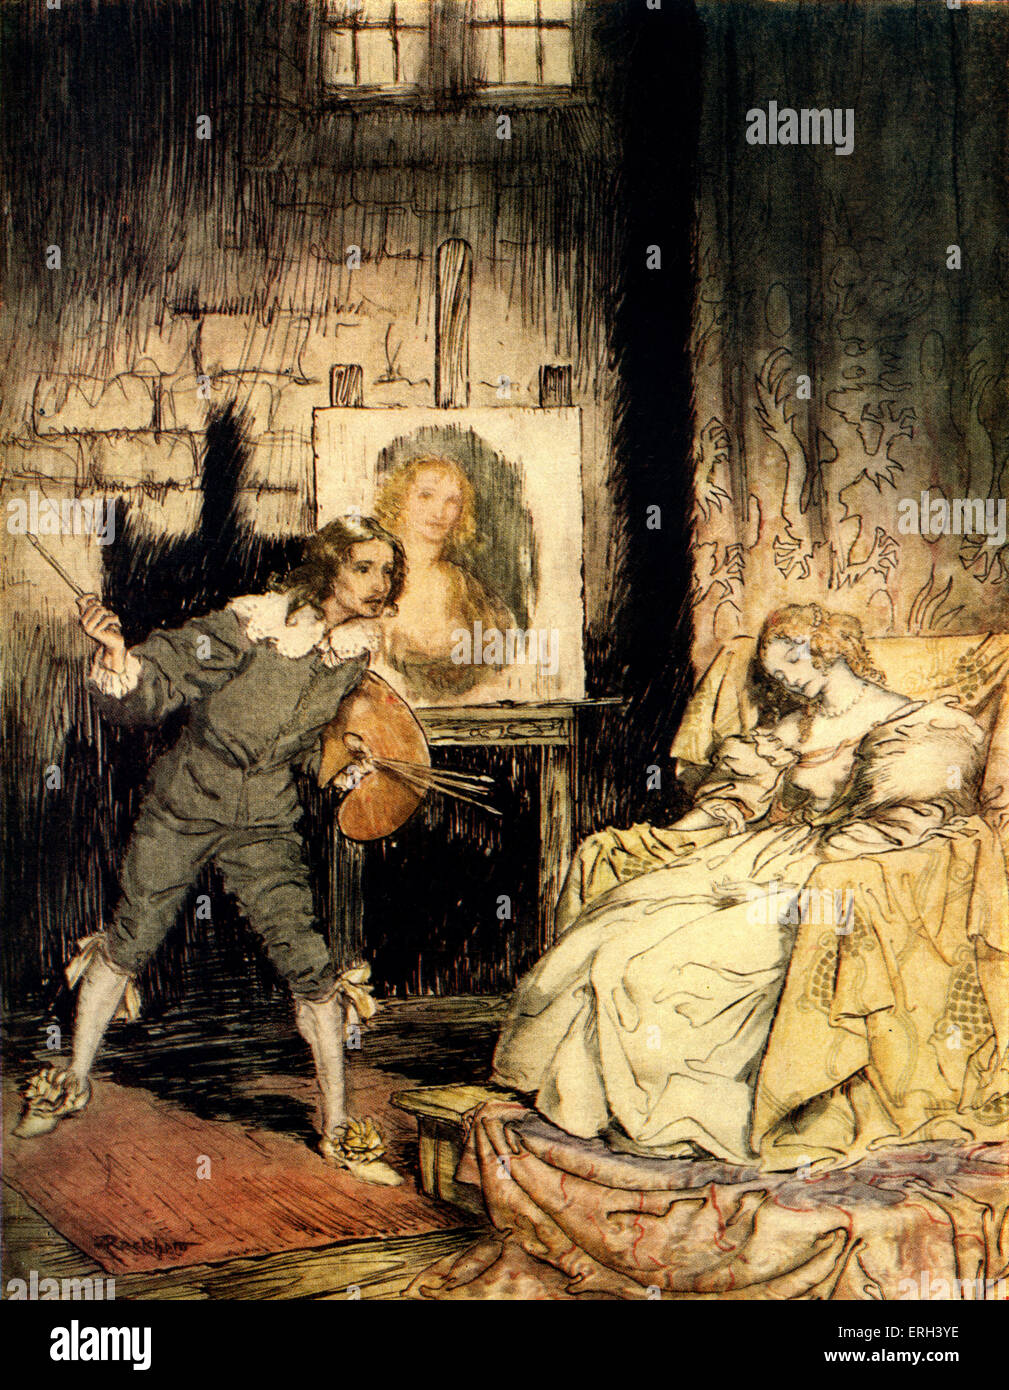 "El retrato Oval" de Edgar Allan Poe. Un artista inadvertidamente mata a su esposa por capturar su alma en un retrato. Título: Foto de stock